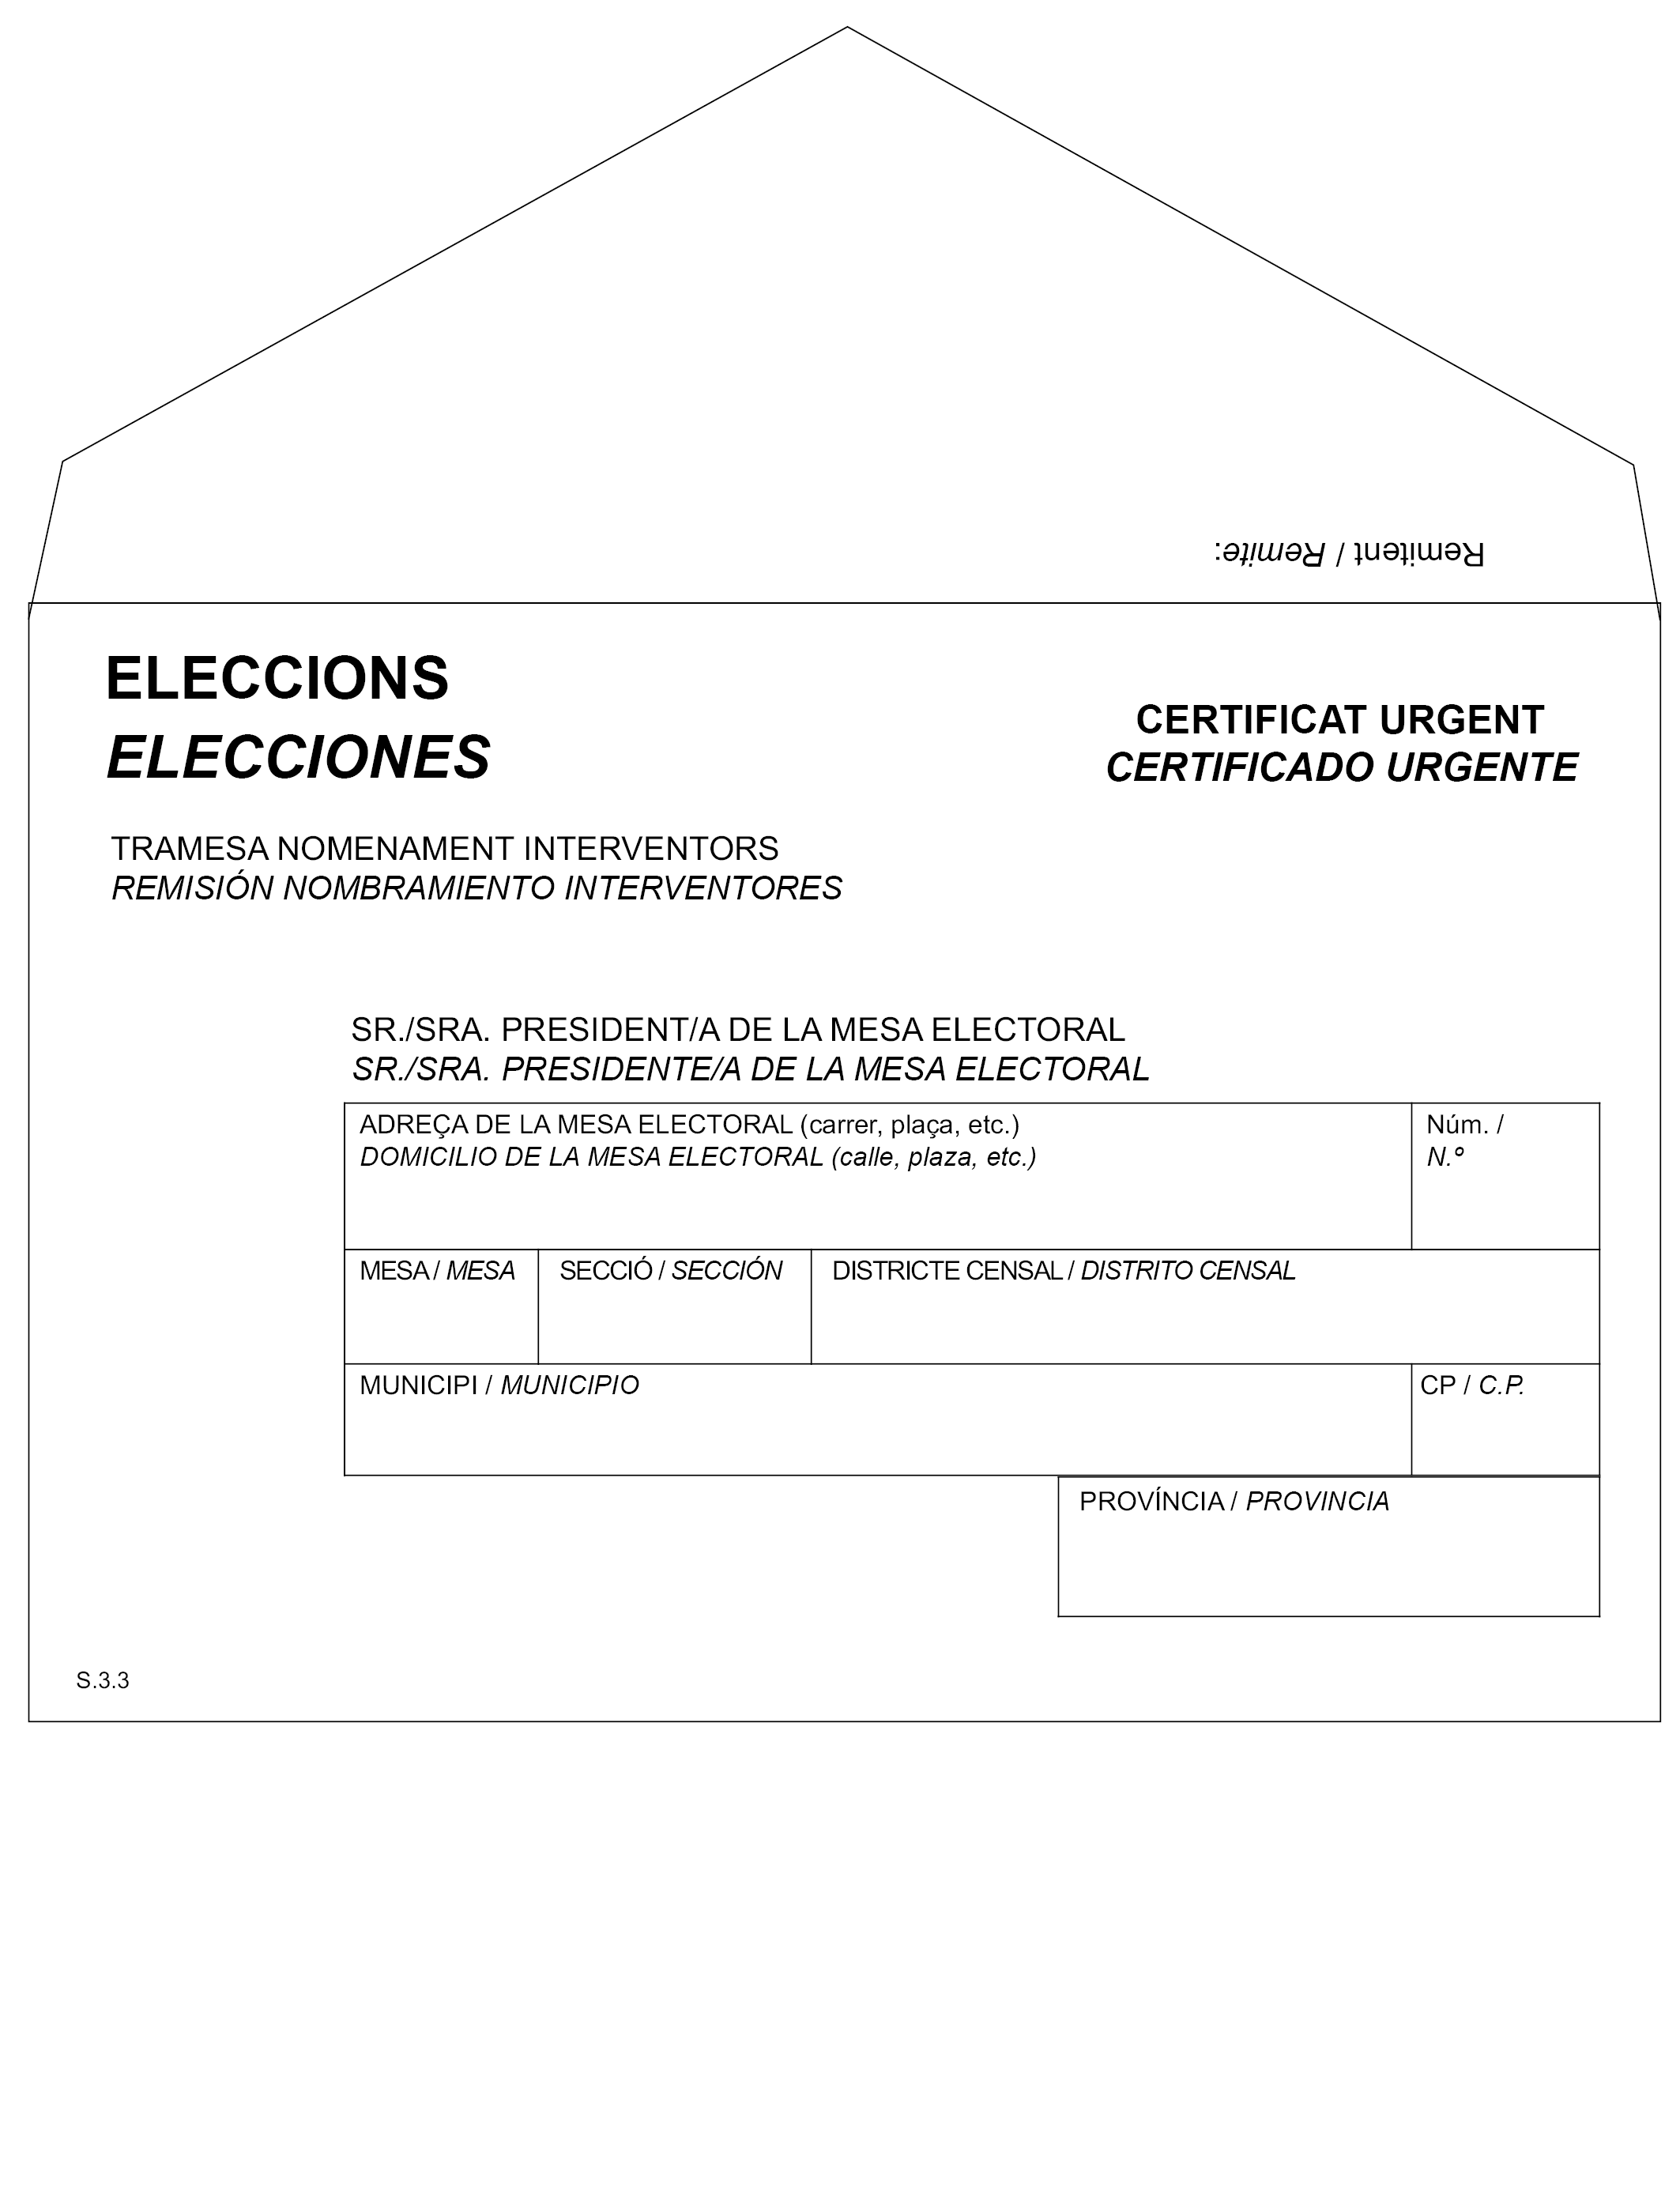 BOE.es - BOE-A-2017-12613 Real Decreto 953/2017, de 31 de octubre, por el  que se dictan normas complementarias para la realización de las elecciones  al Parlamento de Cataluña 2017.